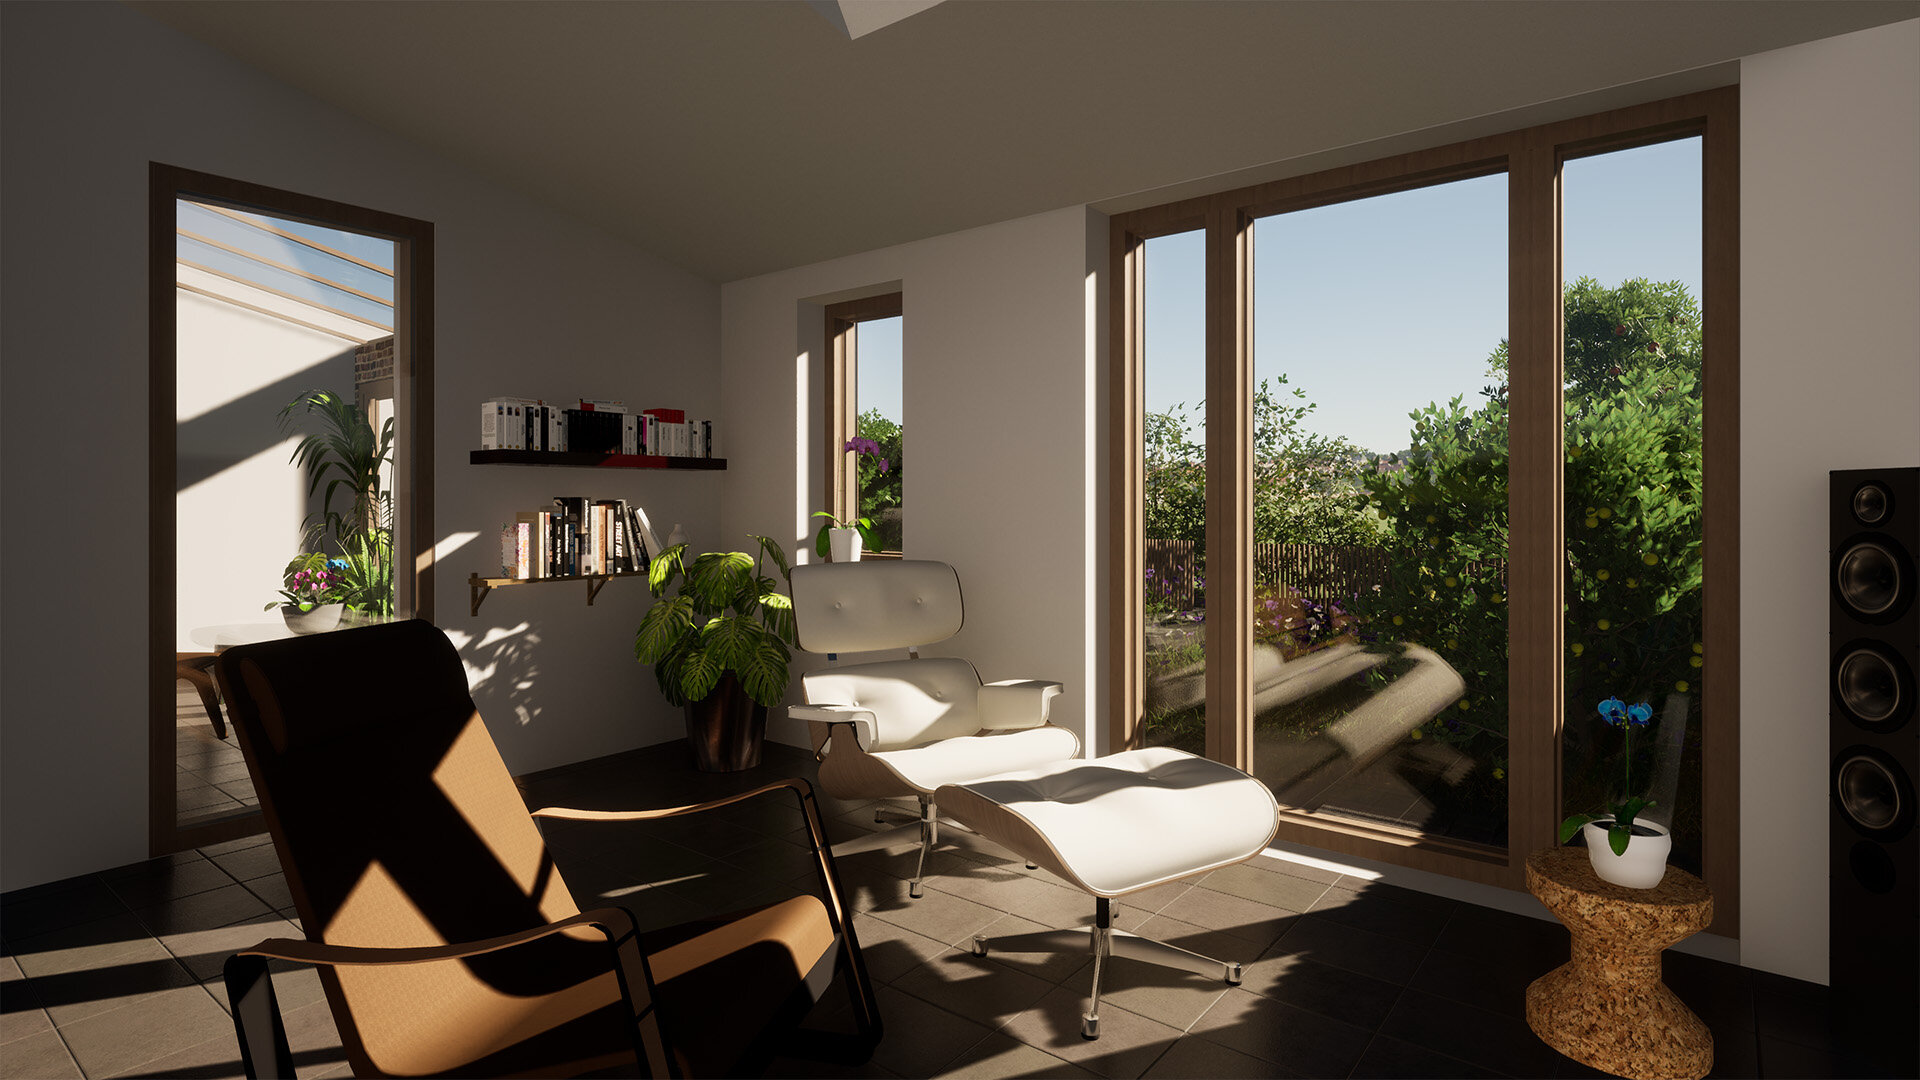 Sun Lounge_Elloughton Sun Spaces_Sustainable Hull Architects_Samuel Kendall Associates